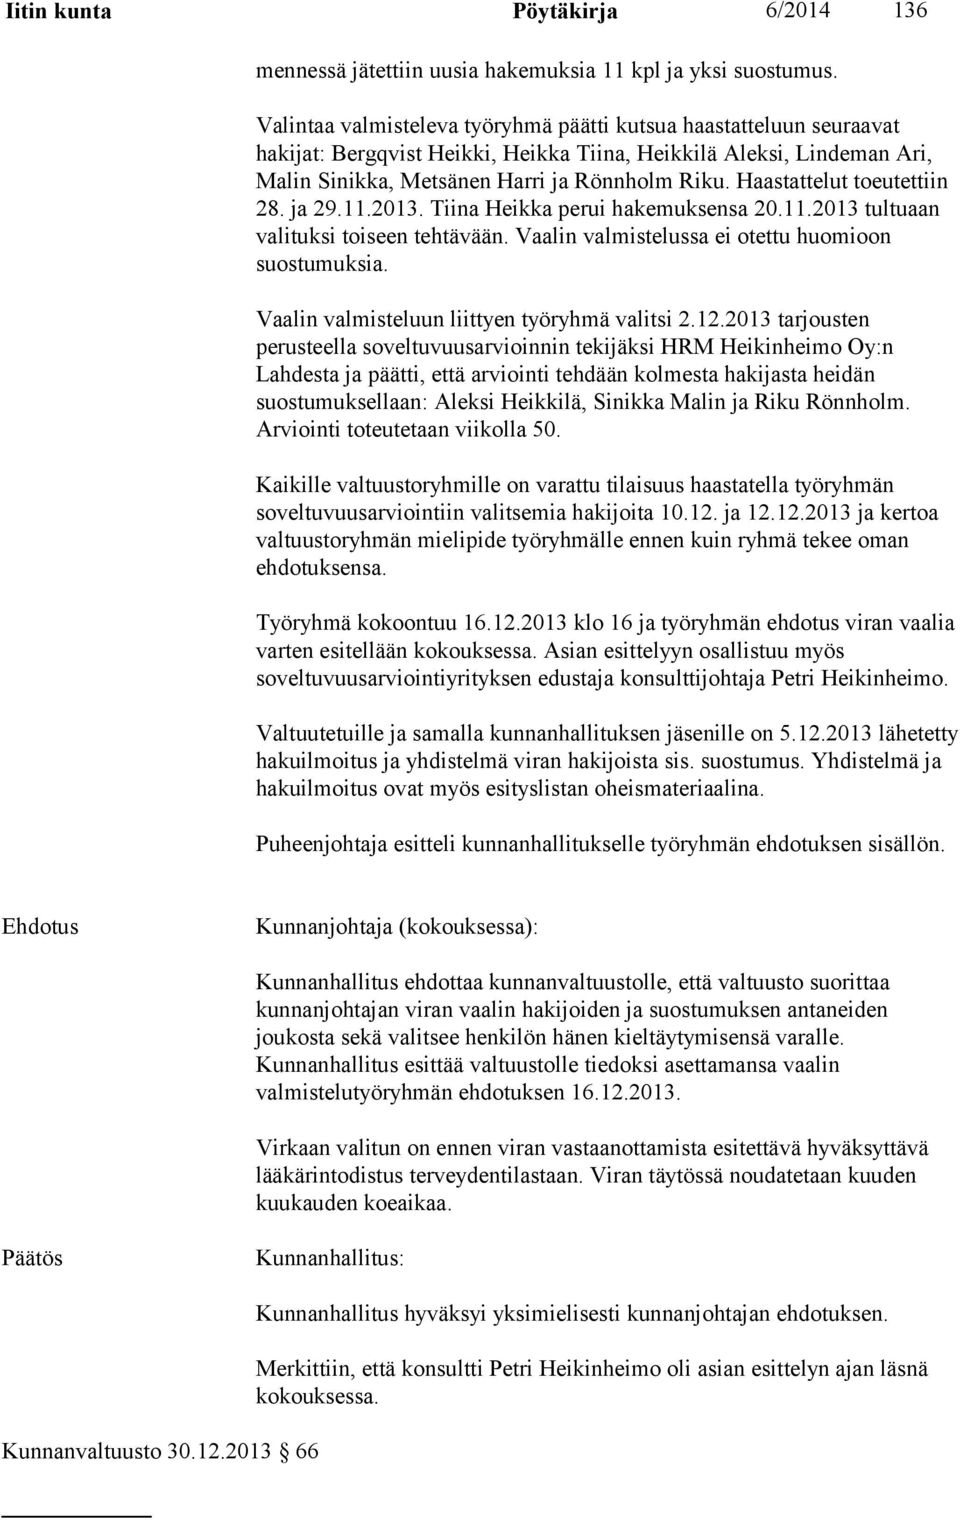 Haastattelut toeutettiin 28. ja 29.11.2013. Tiina Heikka perui hakemuksensa 20.11.2013 tultuaan valituksi toiseen tehtävään. Vaalin valmistelussa ei otettu huomioon suostumuksia.